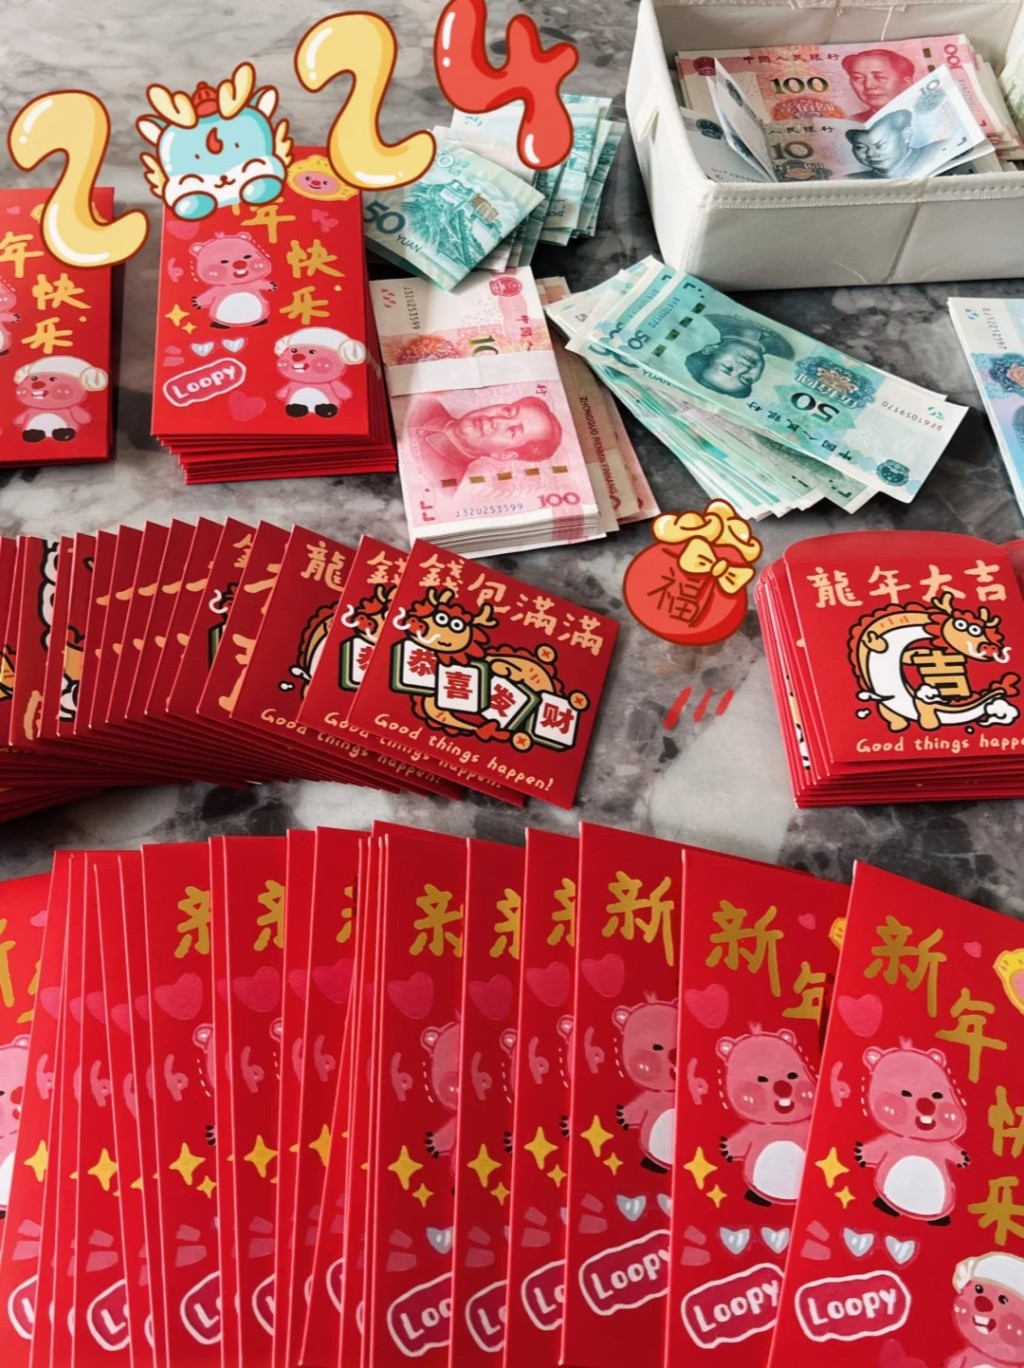 許多華人在農曆新年也要準備大筆新錢封利是。小紅書